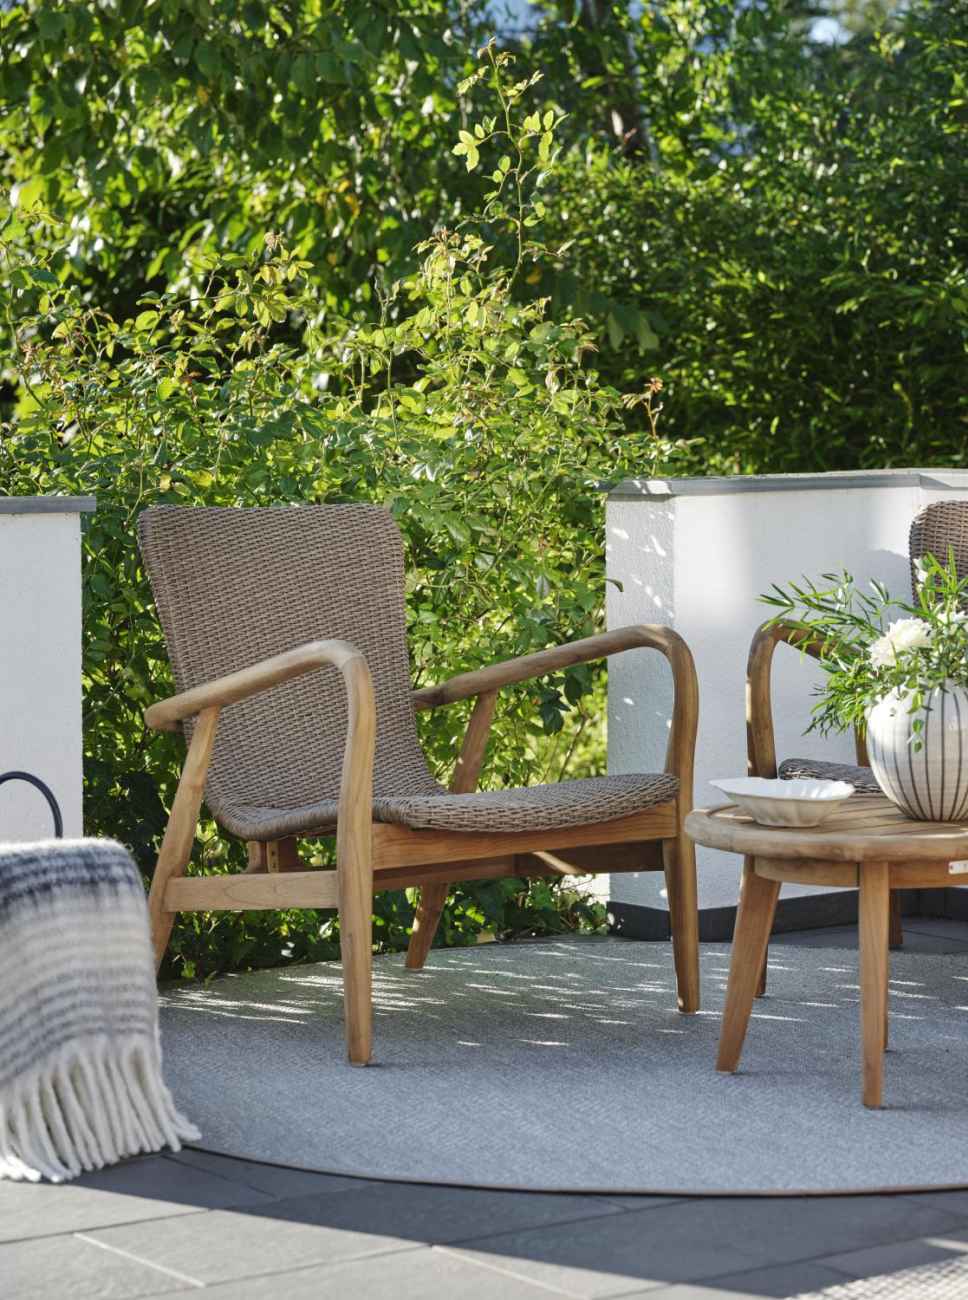 Der Gartensessel Lilja überzeugt mit seinem modernen Design. Gefertigt wurde er aus Rattan, welches einen braunen Farbton besitzt. Das Gestell ist aus Teakholz und hat eine natürliche Farbe. Die Sitzhöhe des Sessels beträgt 39 cm.